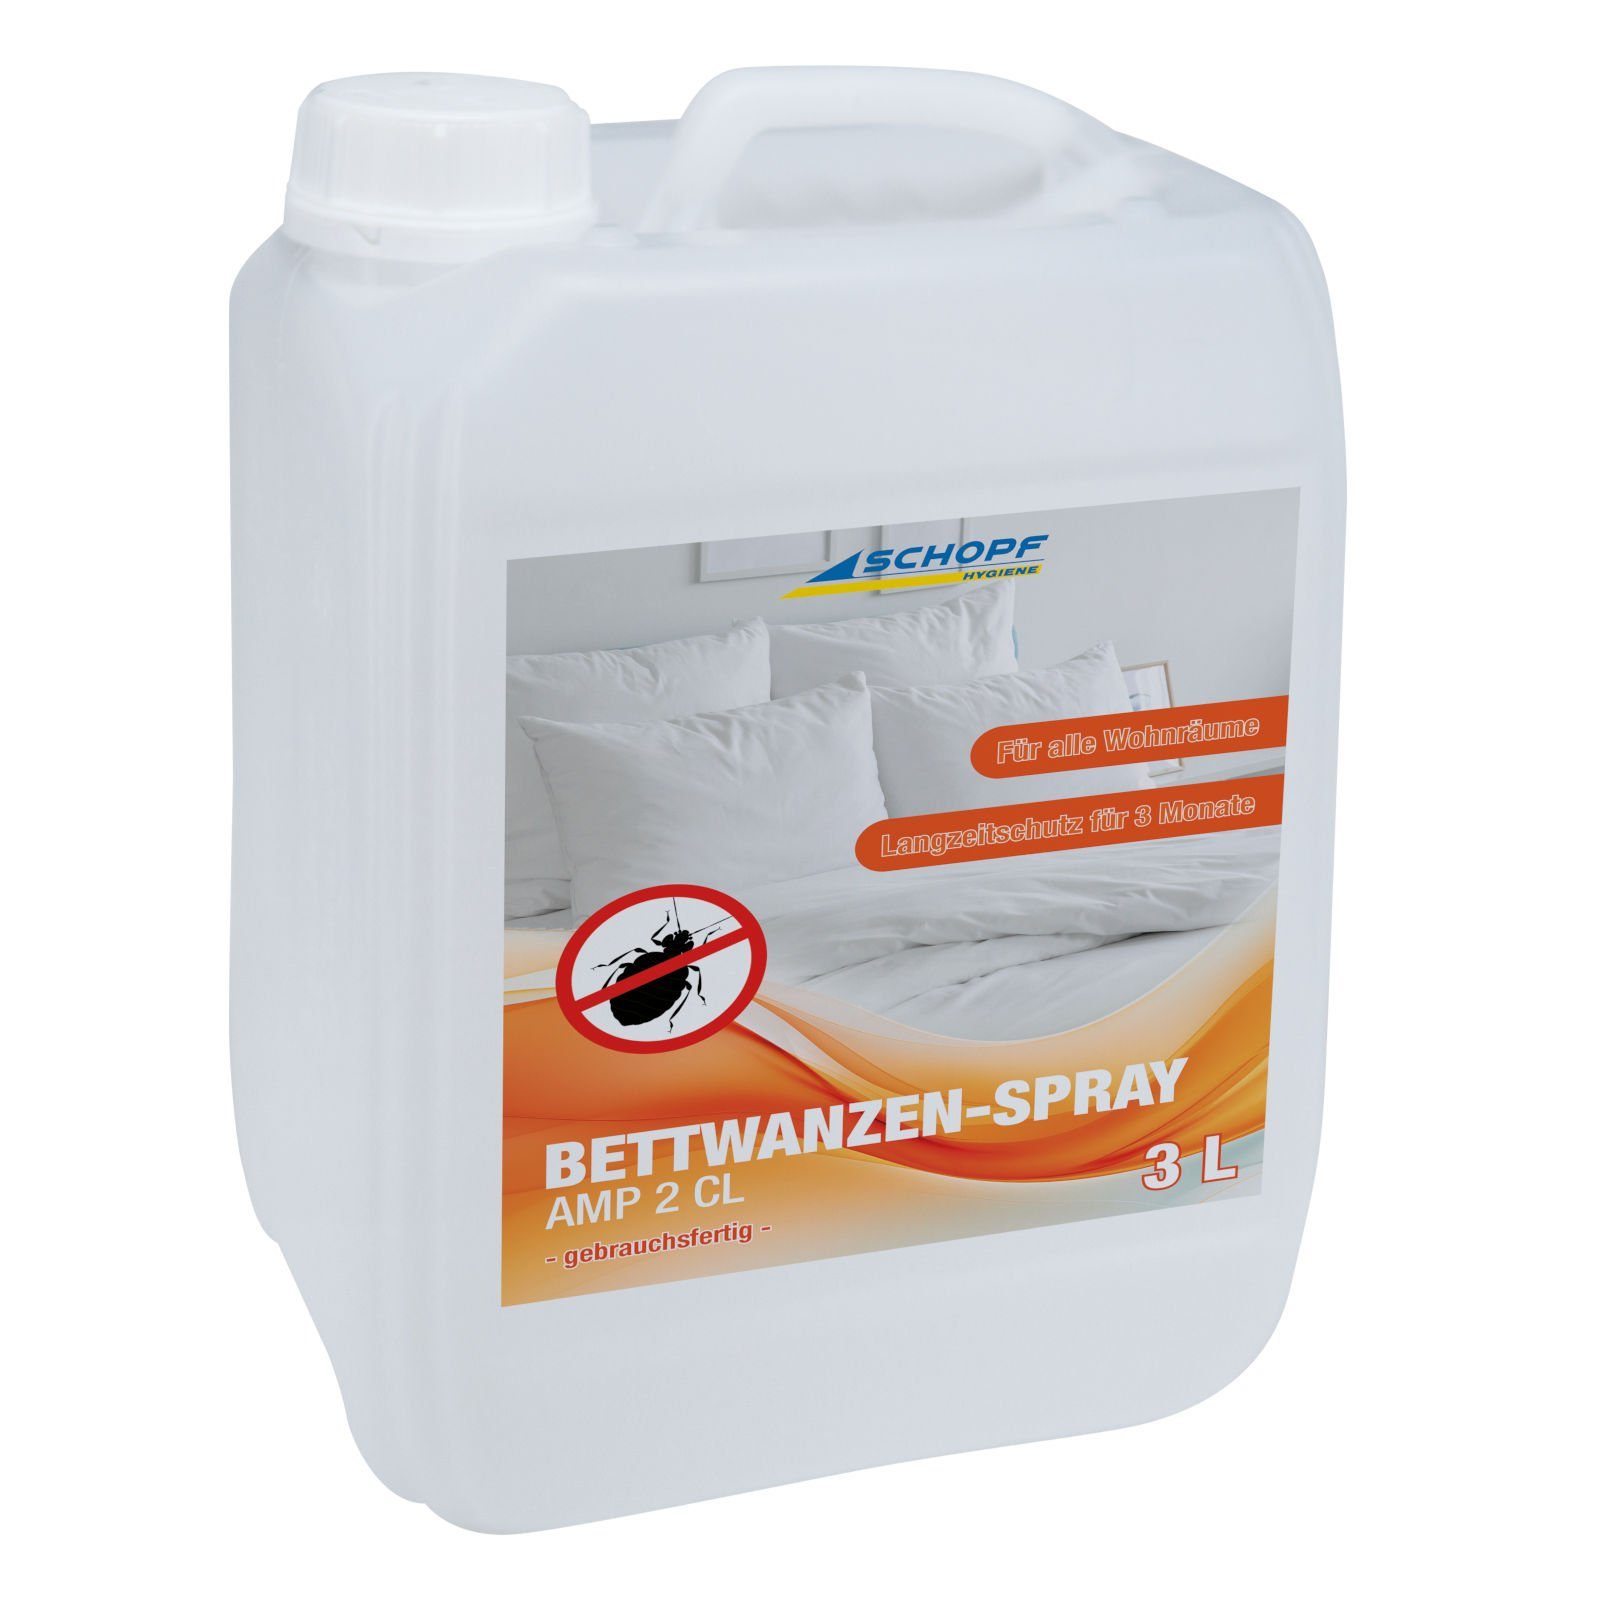 Schopf Insektenspray Bettwanzen-Spray - Nachfüllkanister - 3 Liter